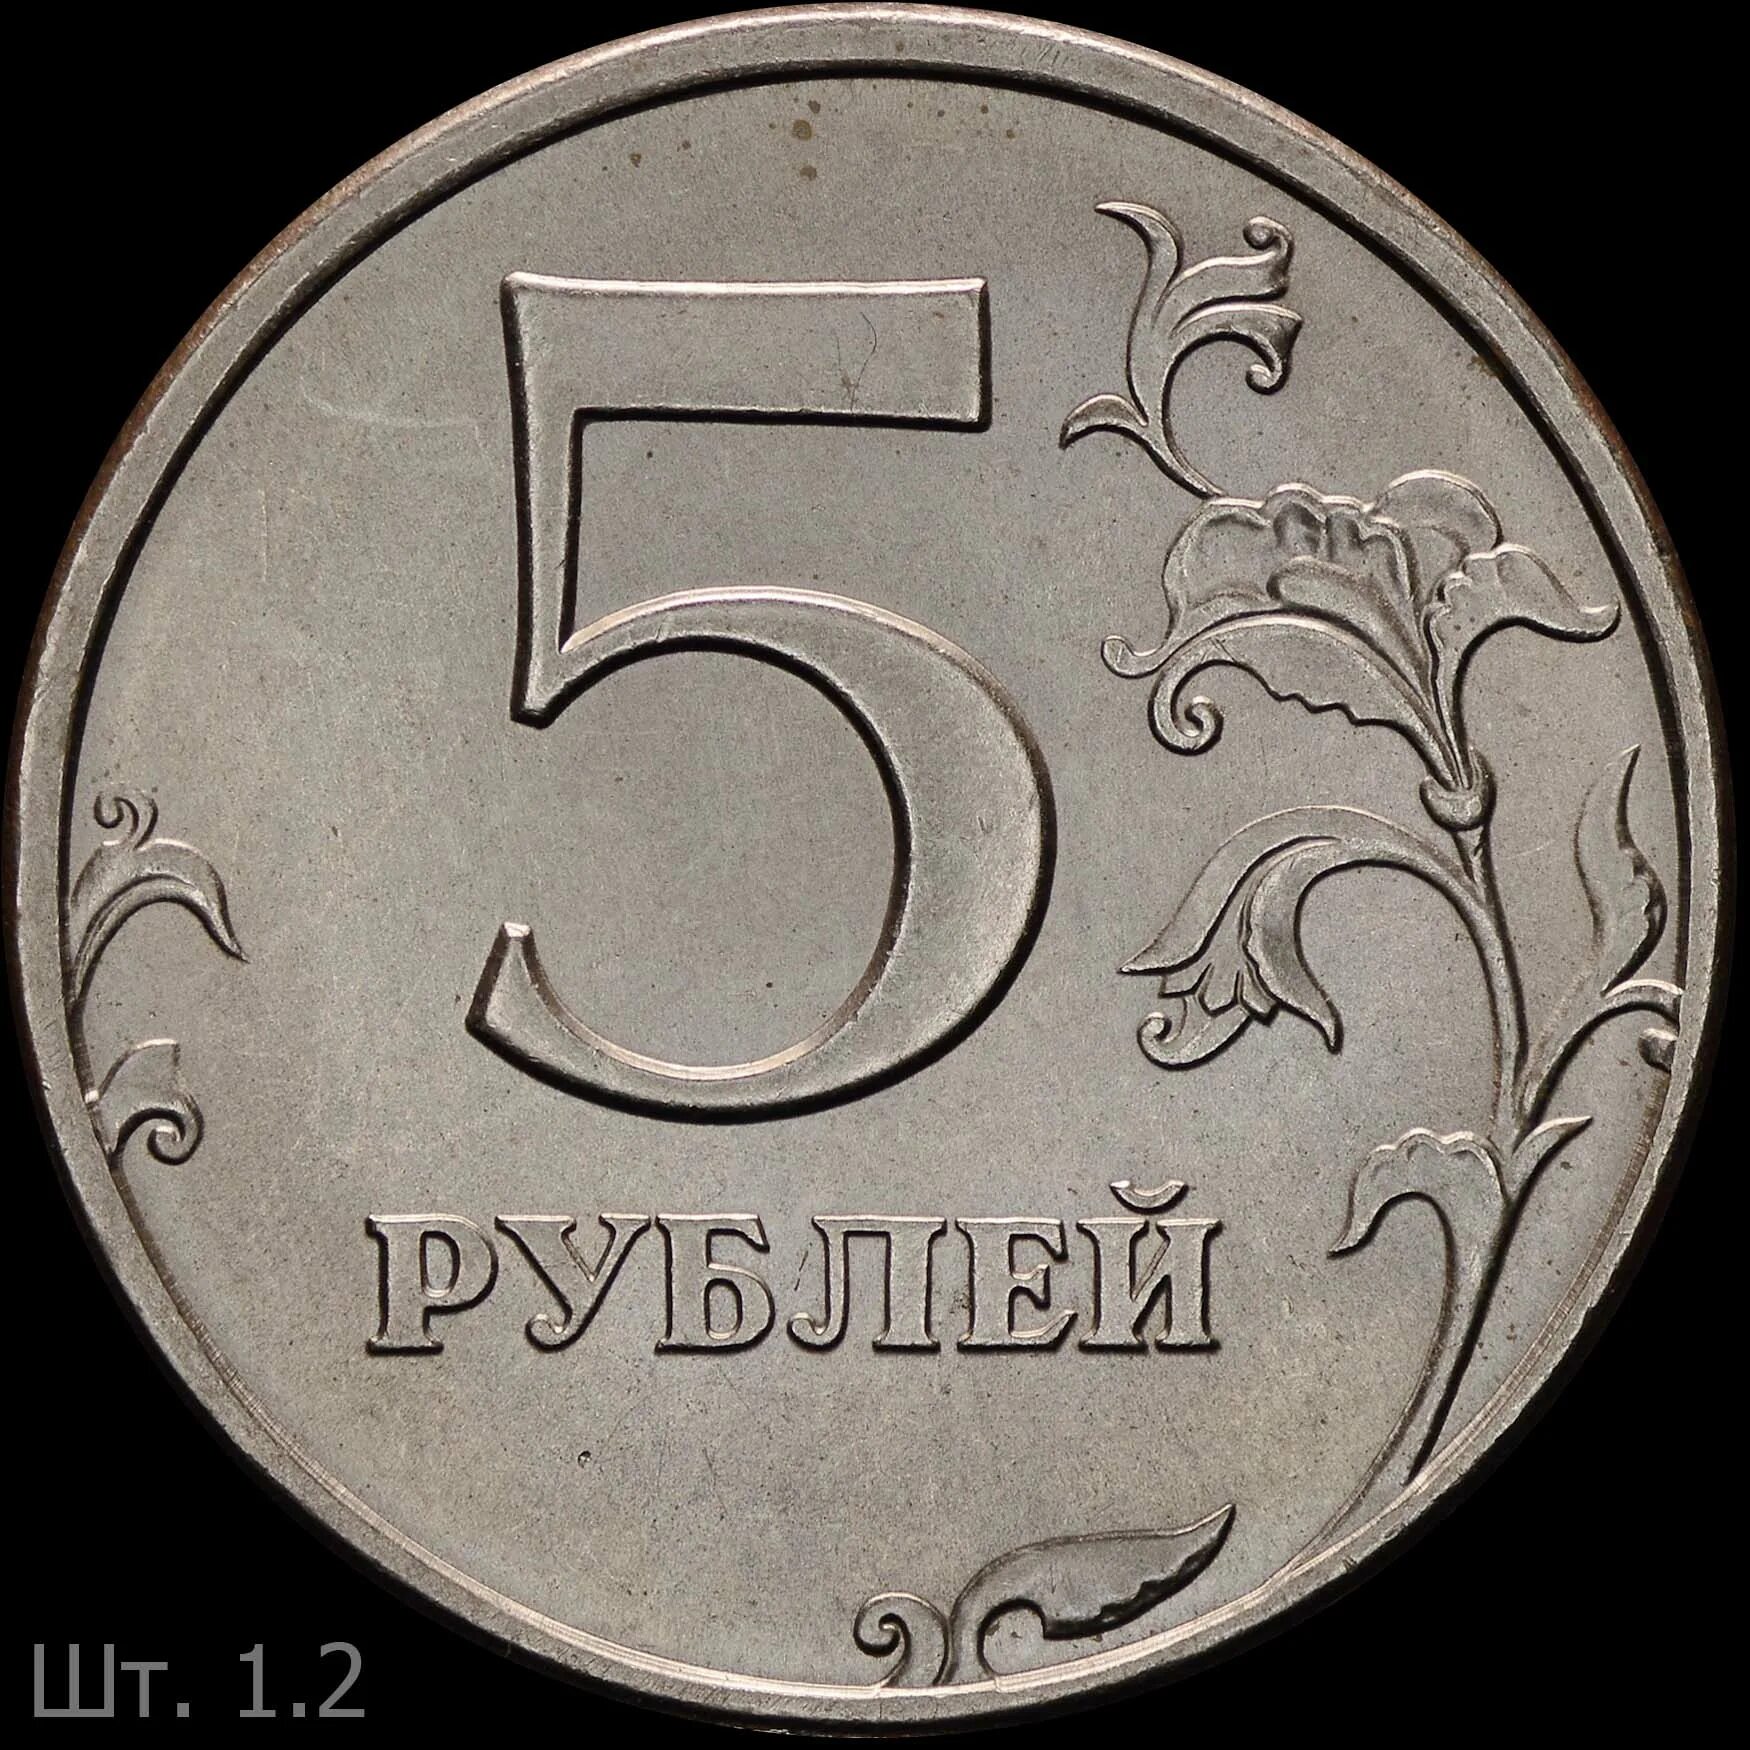 Ценность 5 рубль. 5 Рублей 1997 года СПМД штемпель 2.3. Пять рублей Санкт-Петербургский монетный двор 1997. 5 Рублей 1997 года. Пять рублей 1997 года.